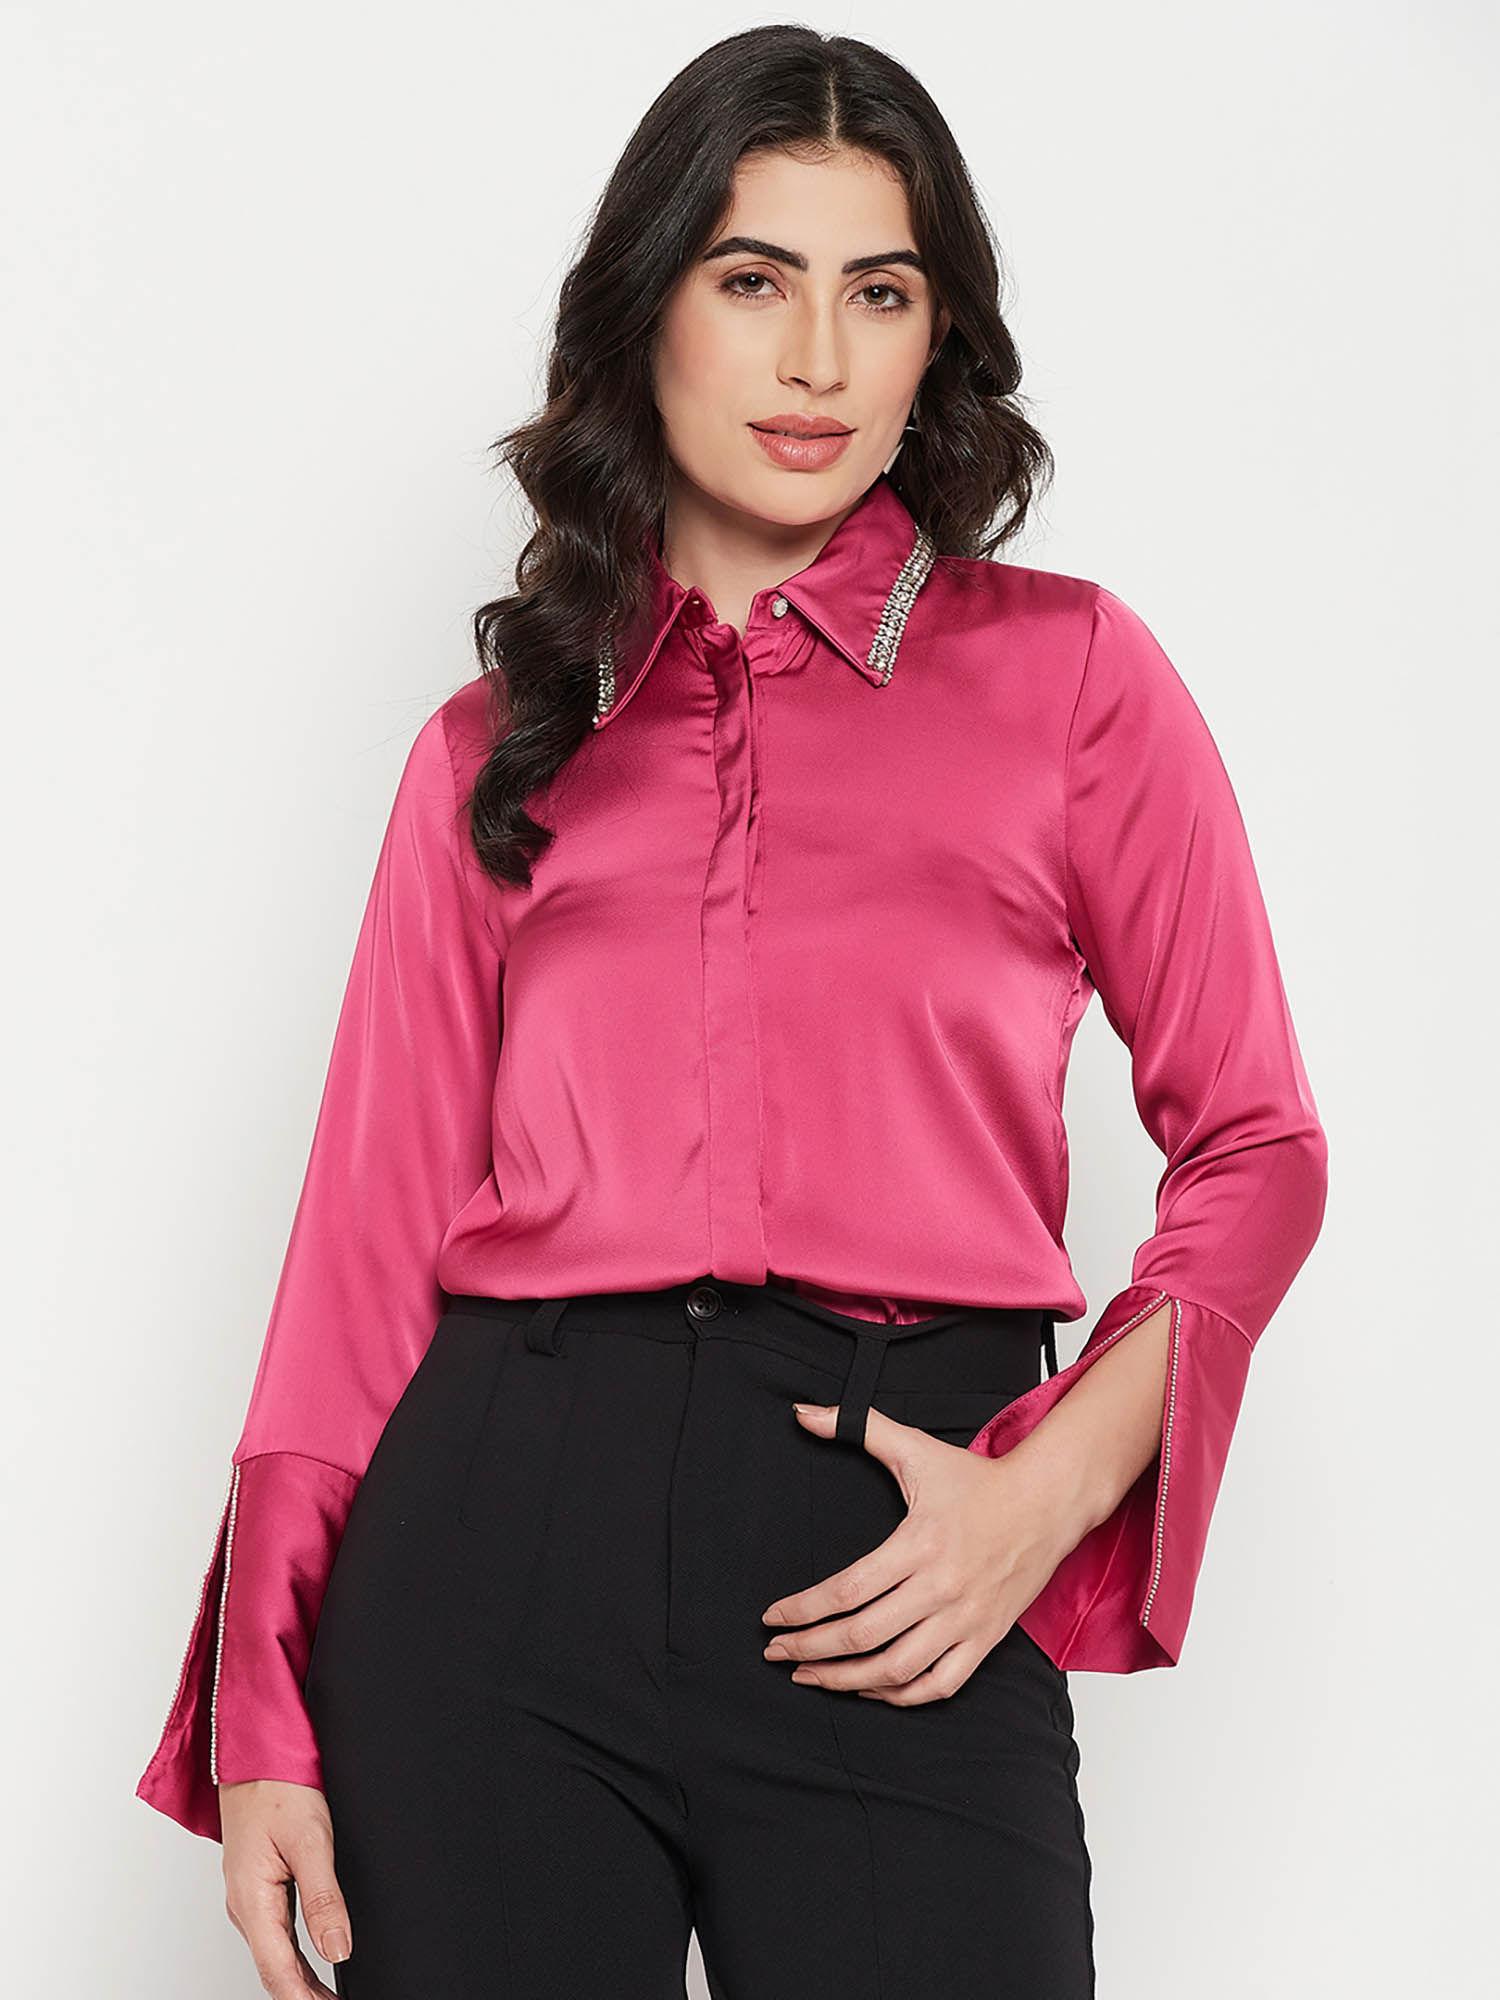 women pink shirt